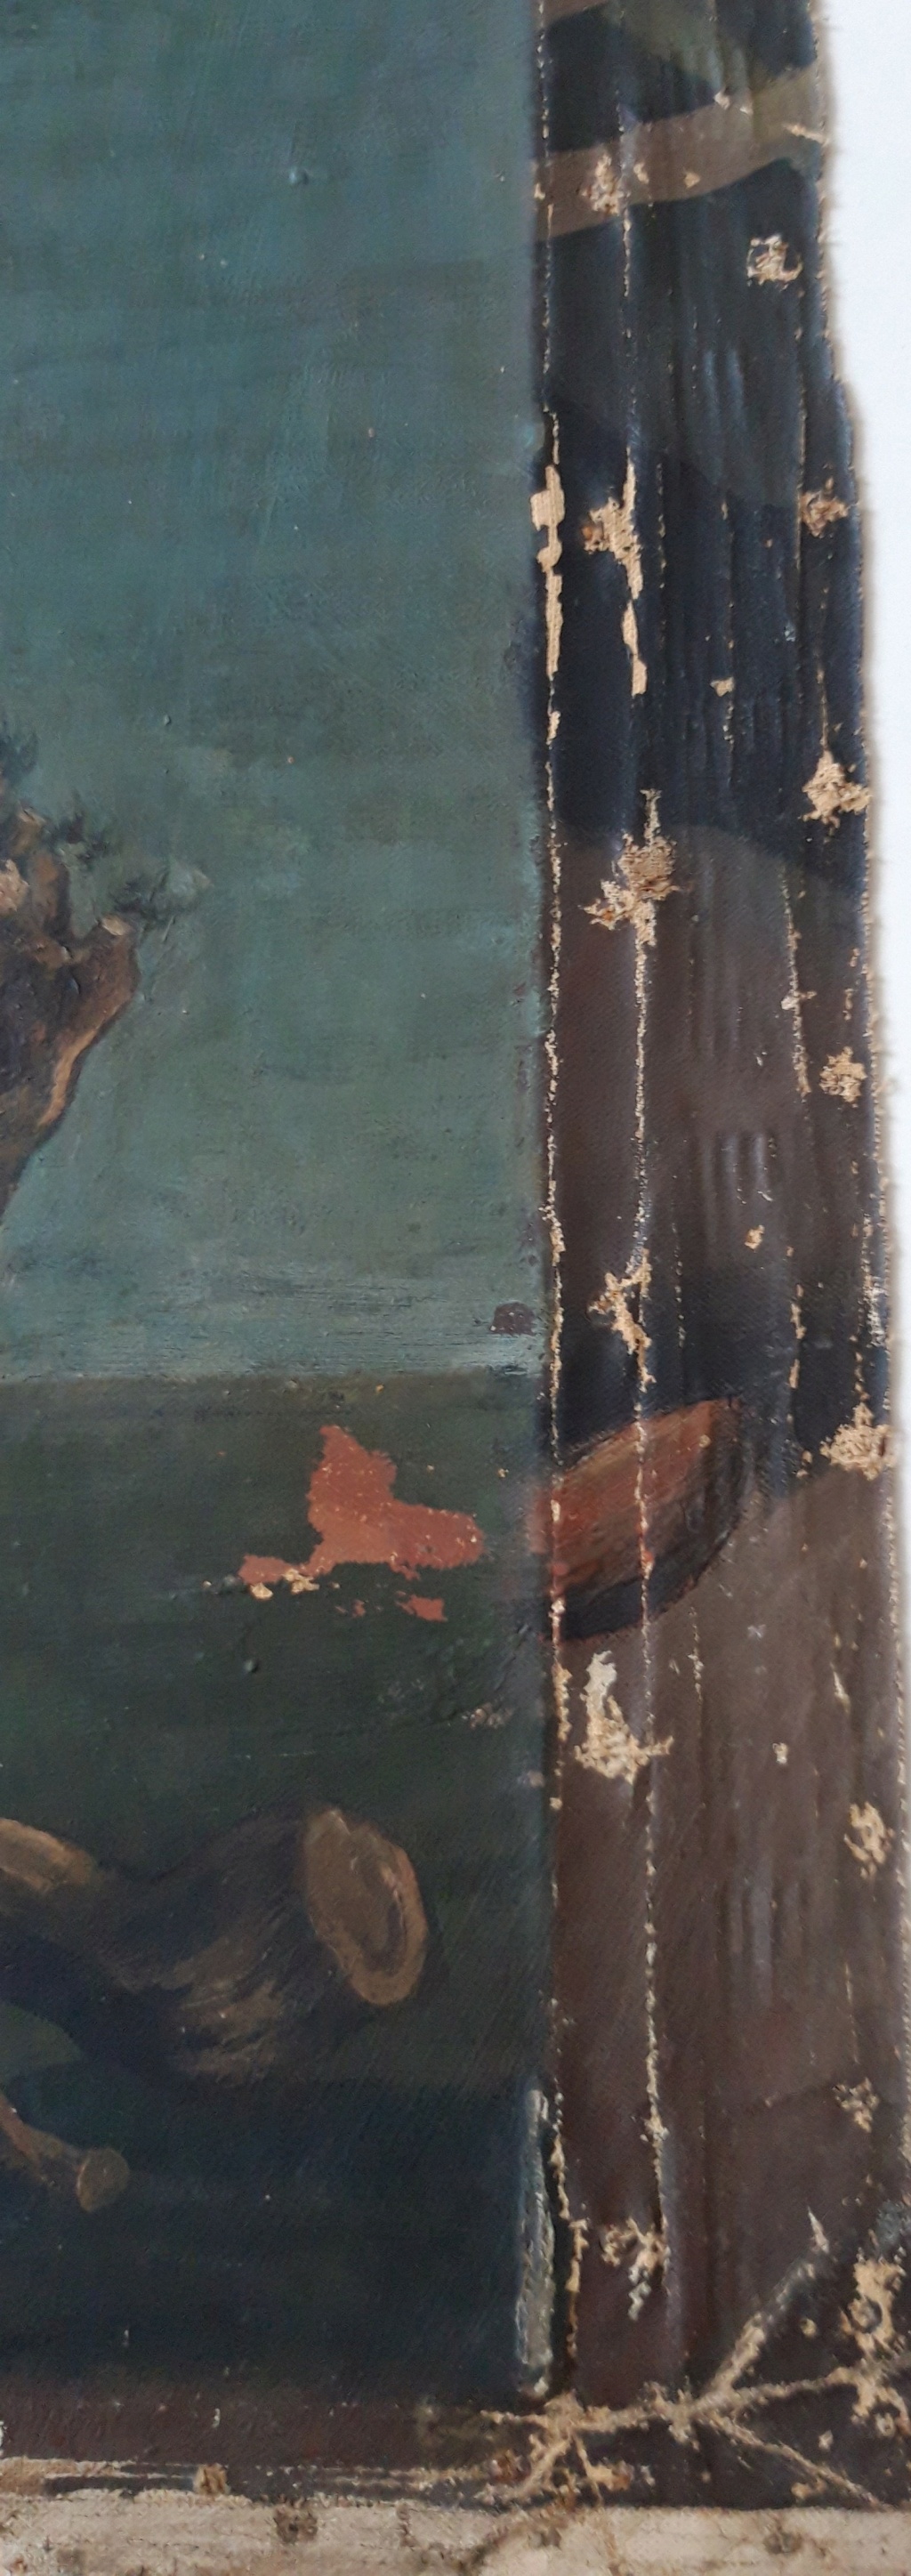 Fragment d'huile sur toile, femme à l'éventail, recherche attribution. 20210112